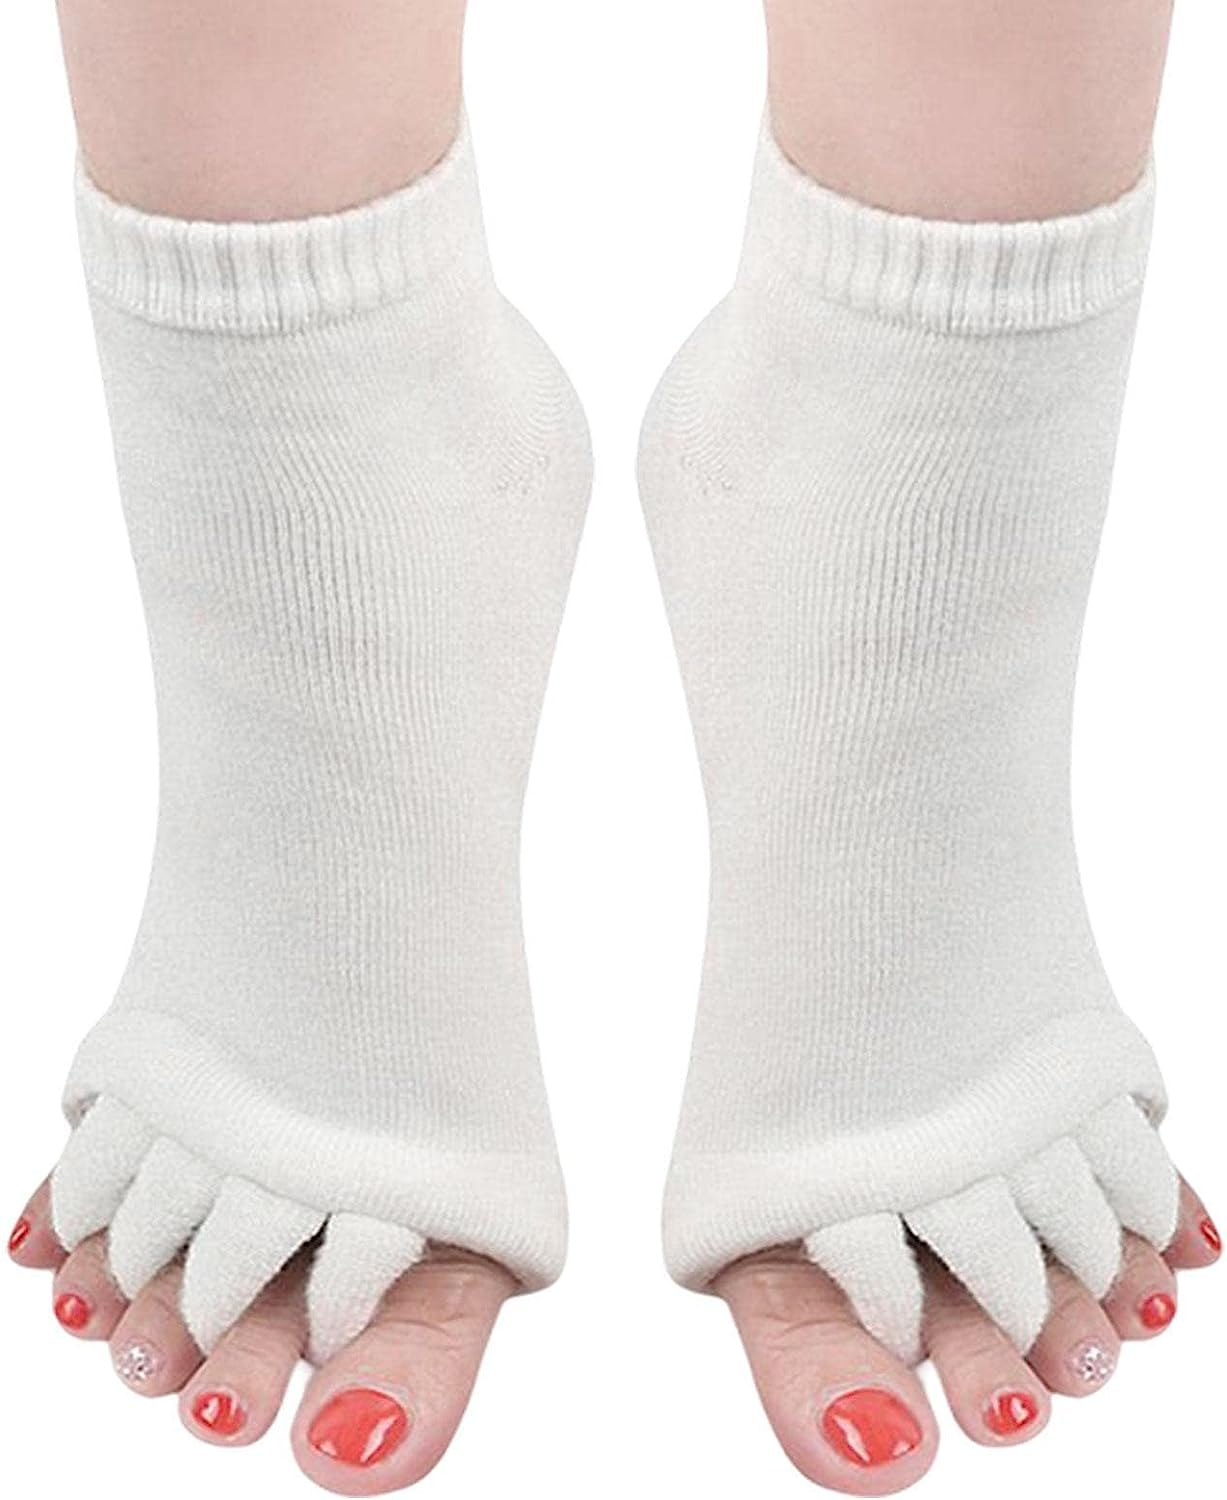 Yoga Toe Socks - Toeless Socks For Women